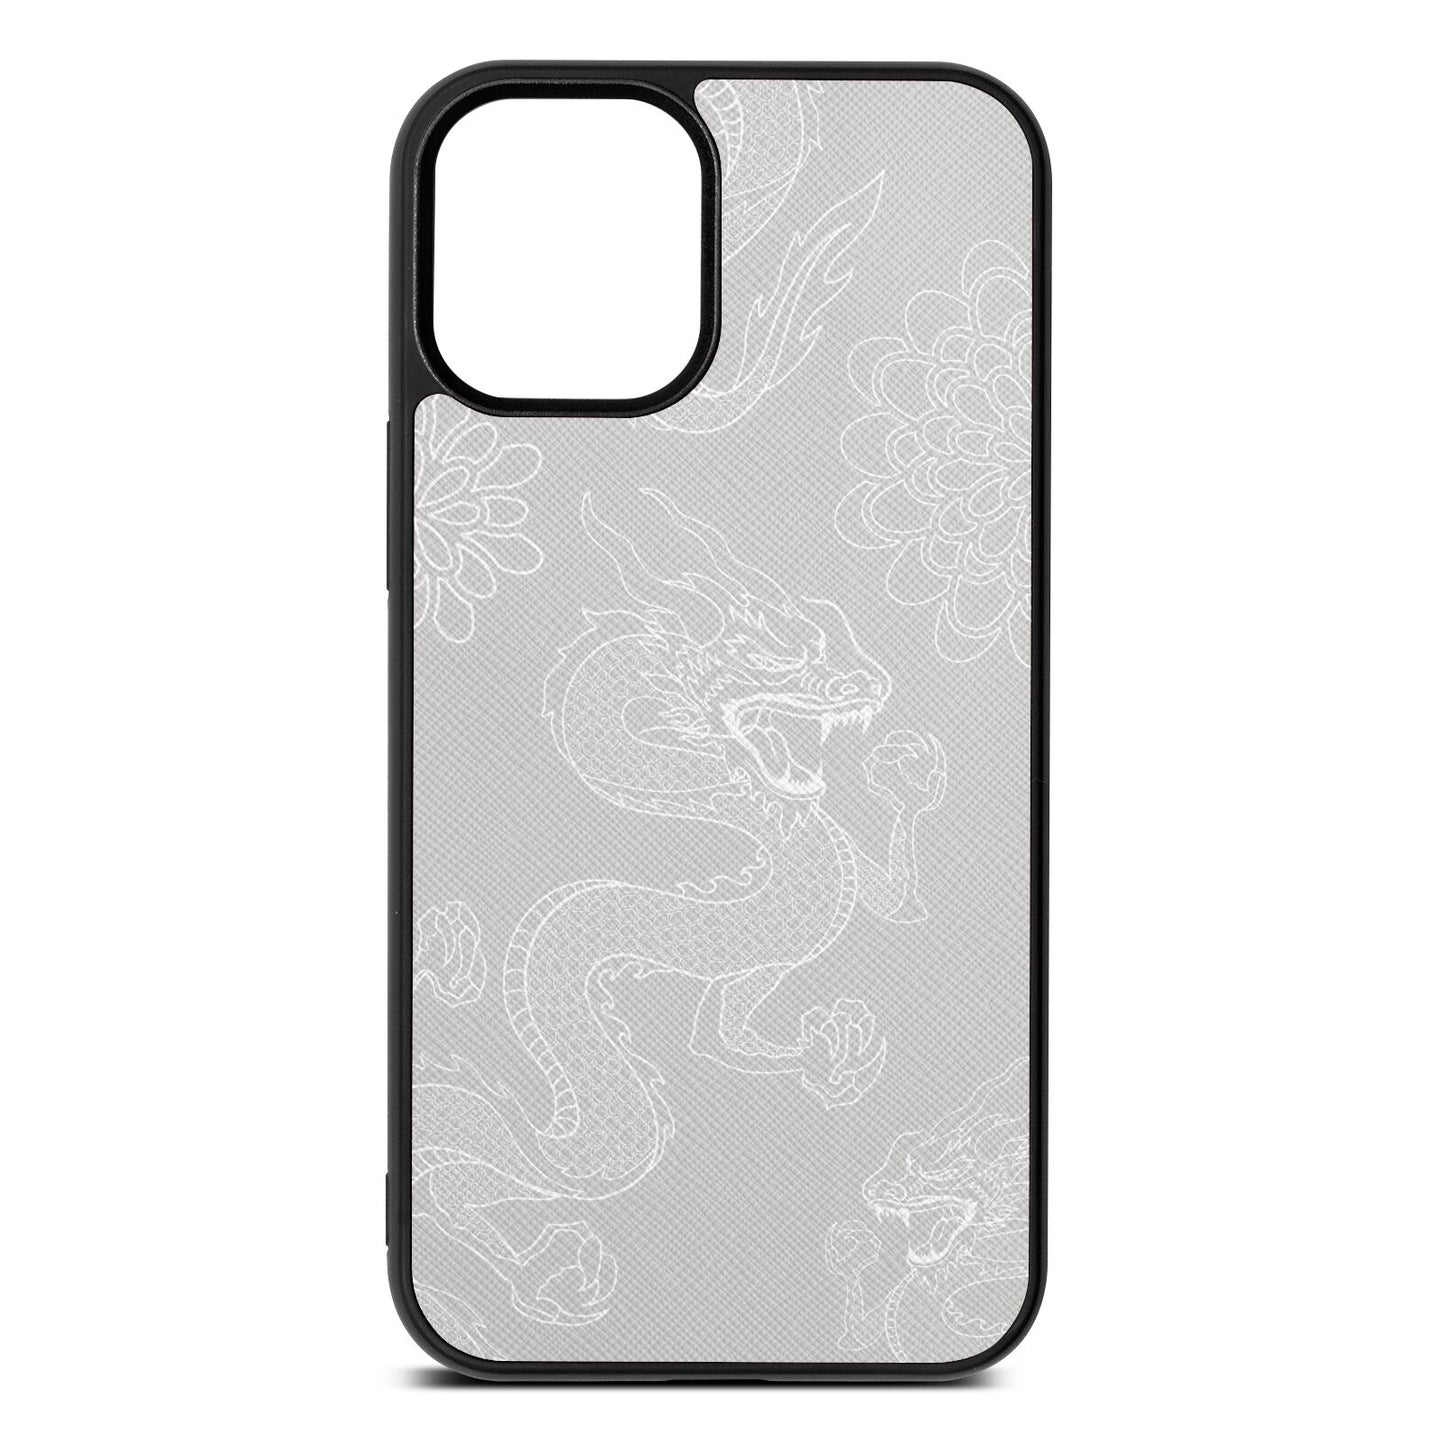 Dragons Silver Saffiano Leather iPhone 12 Mini Case